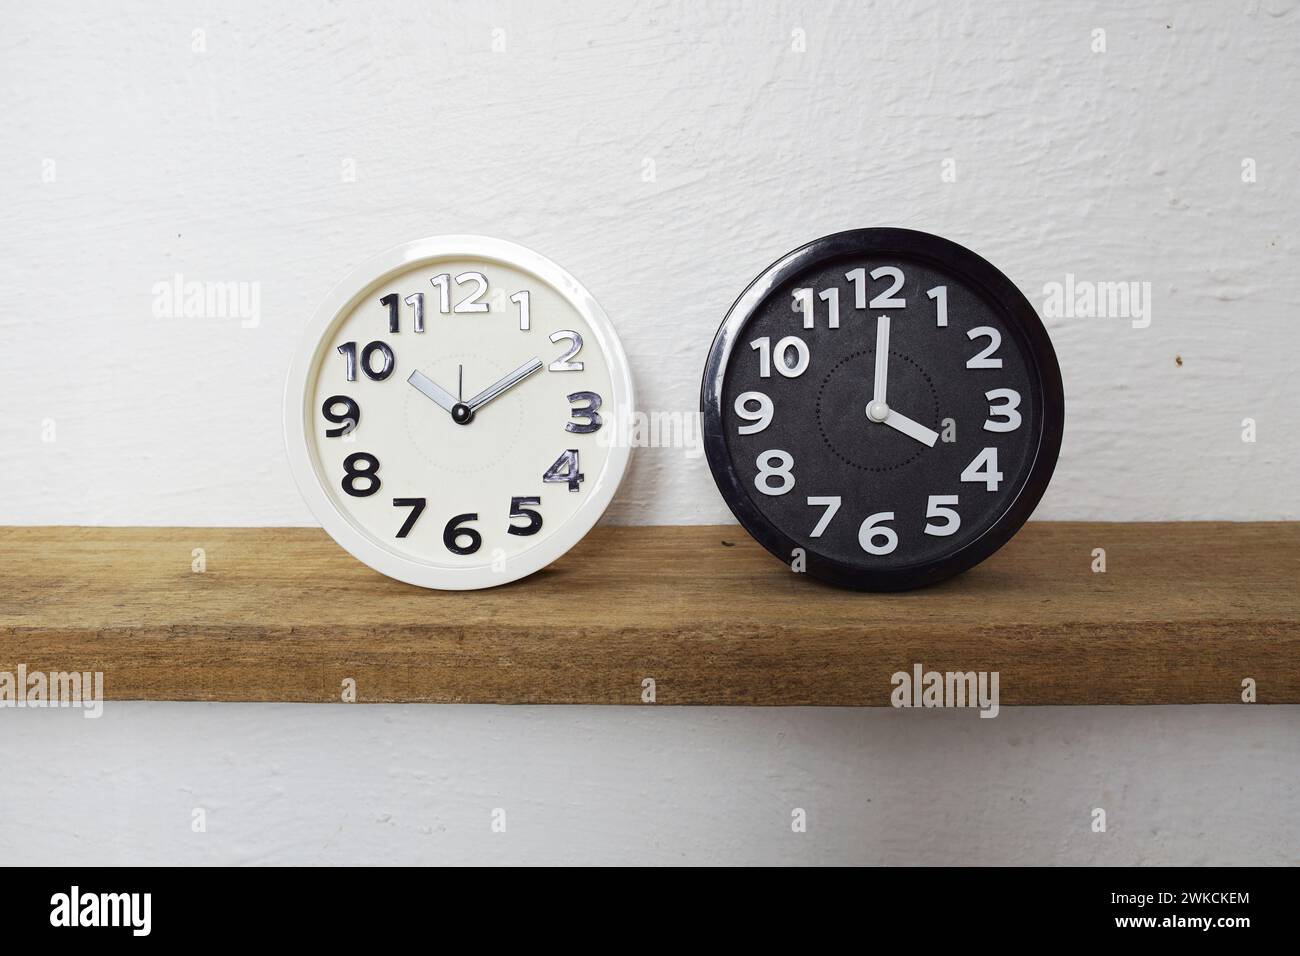 L'horloge Alram blanche et noire montre la différence de temps sur les étagères en bois Banque D'Images